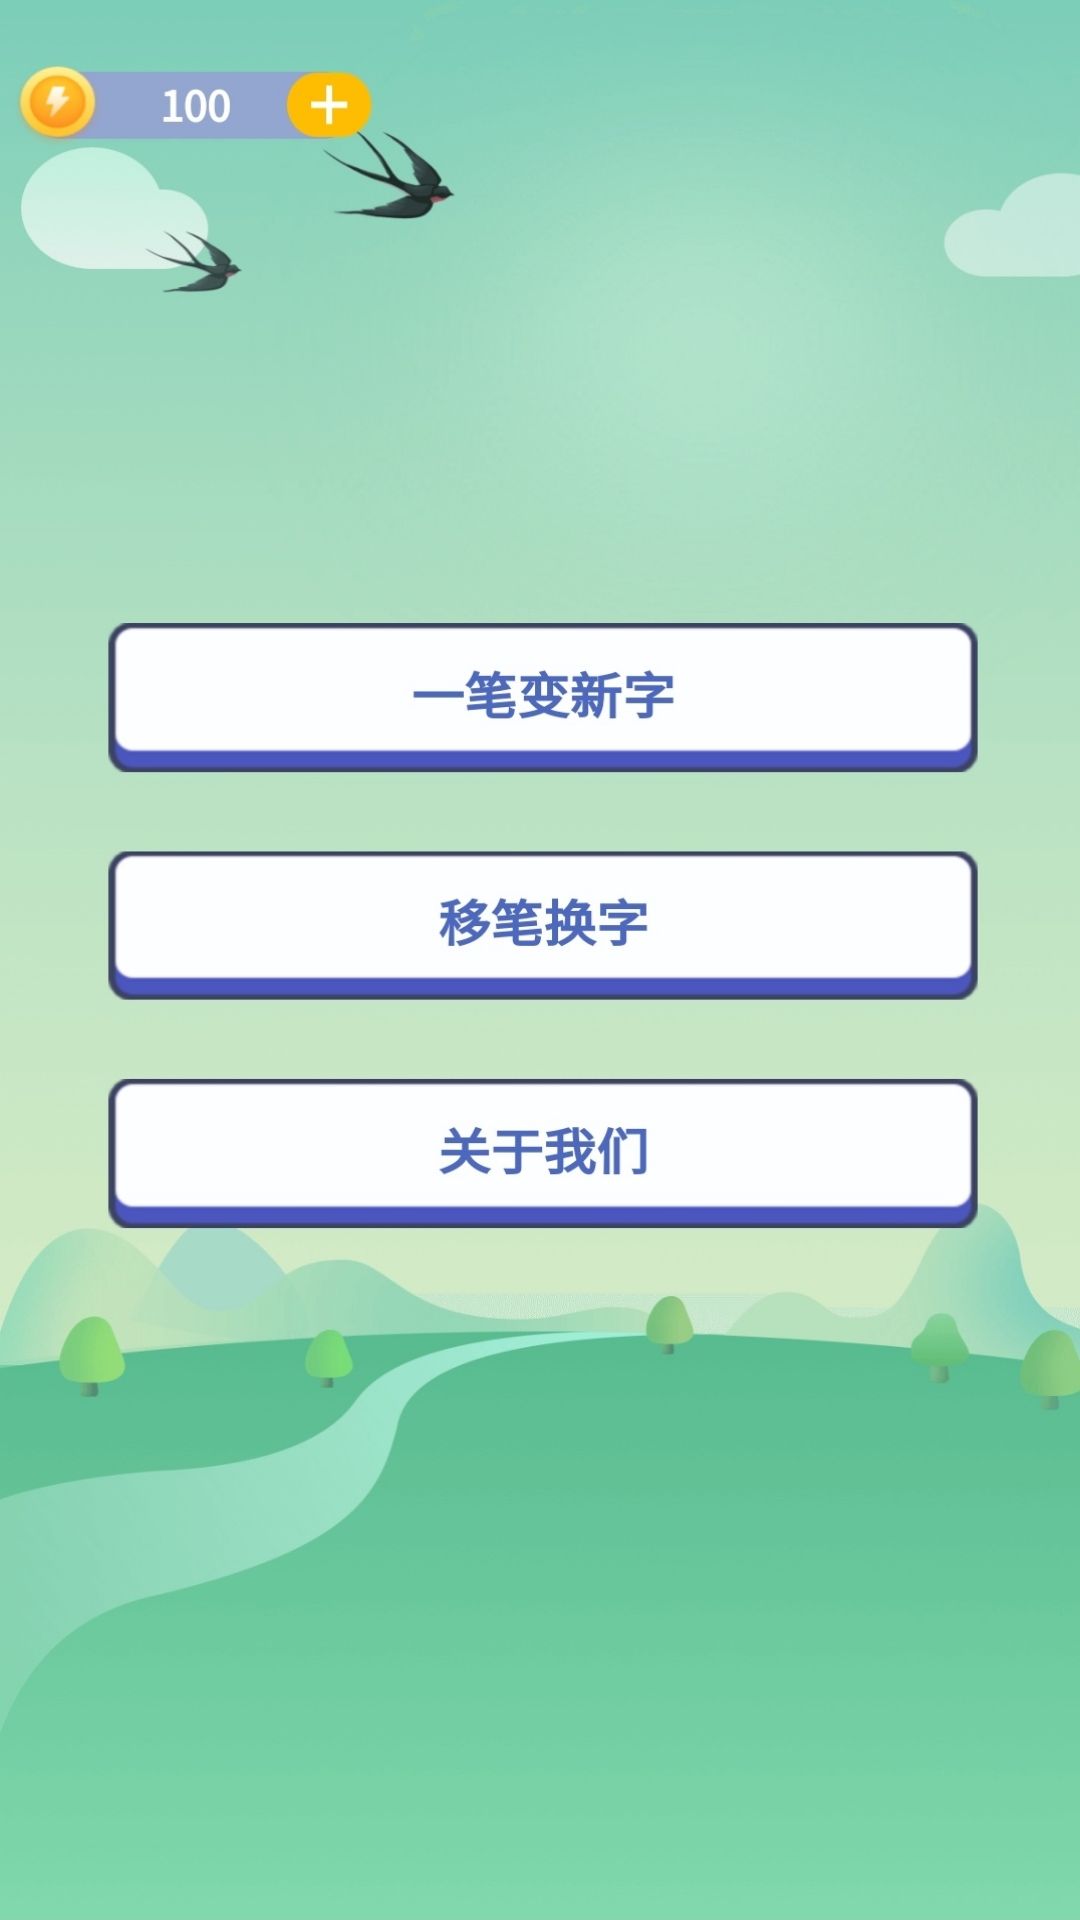 奇妙的汉字好玩吗 奇妙的汉字玩法简介